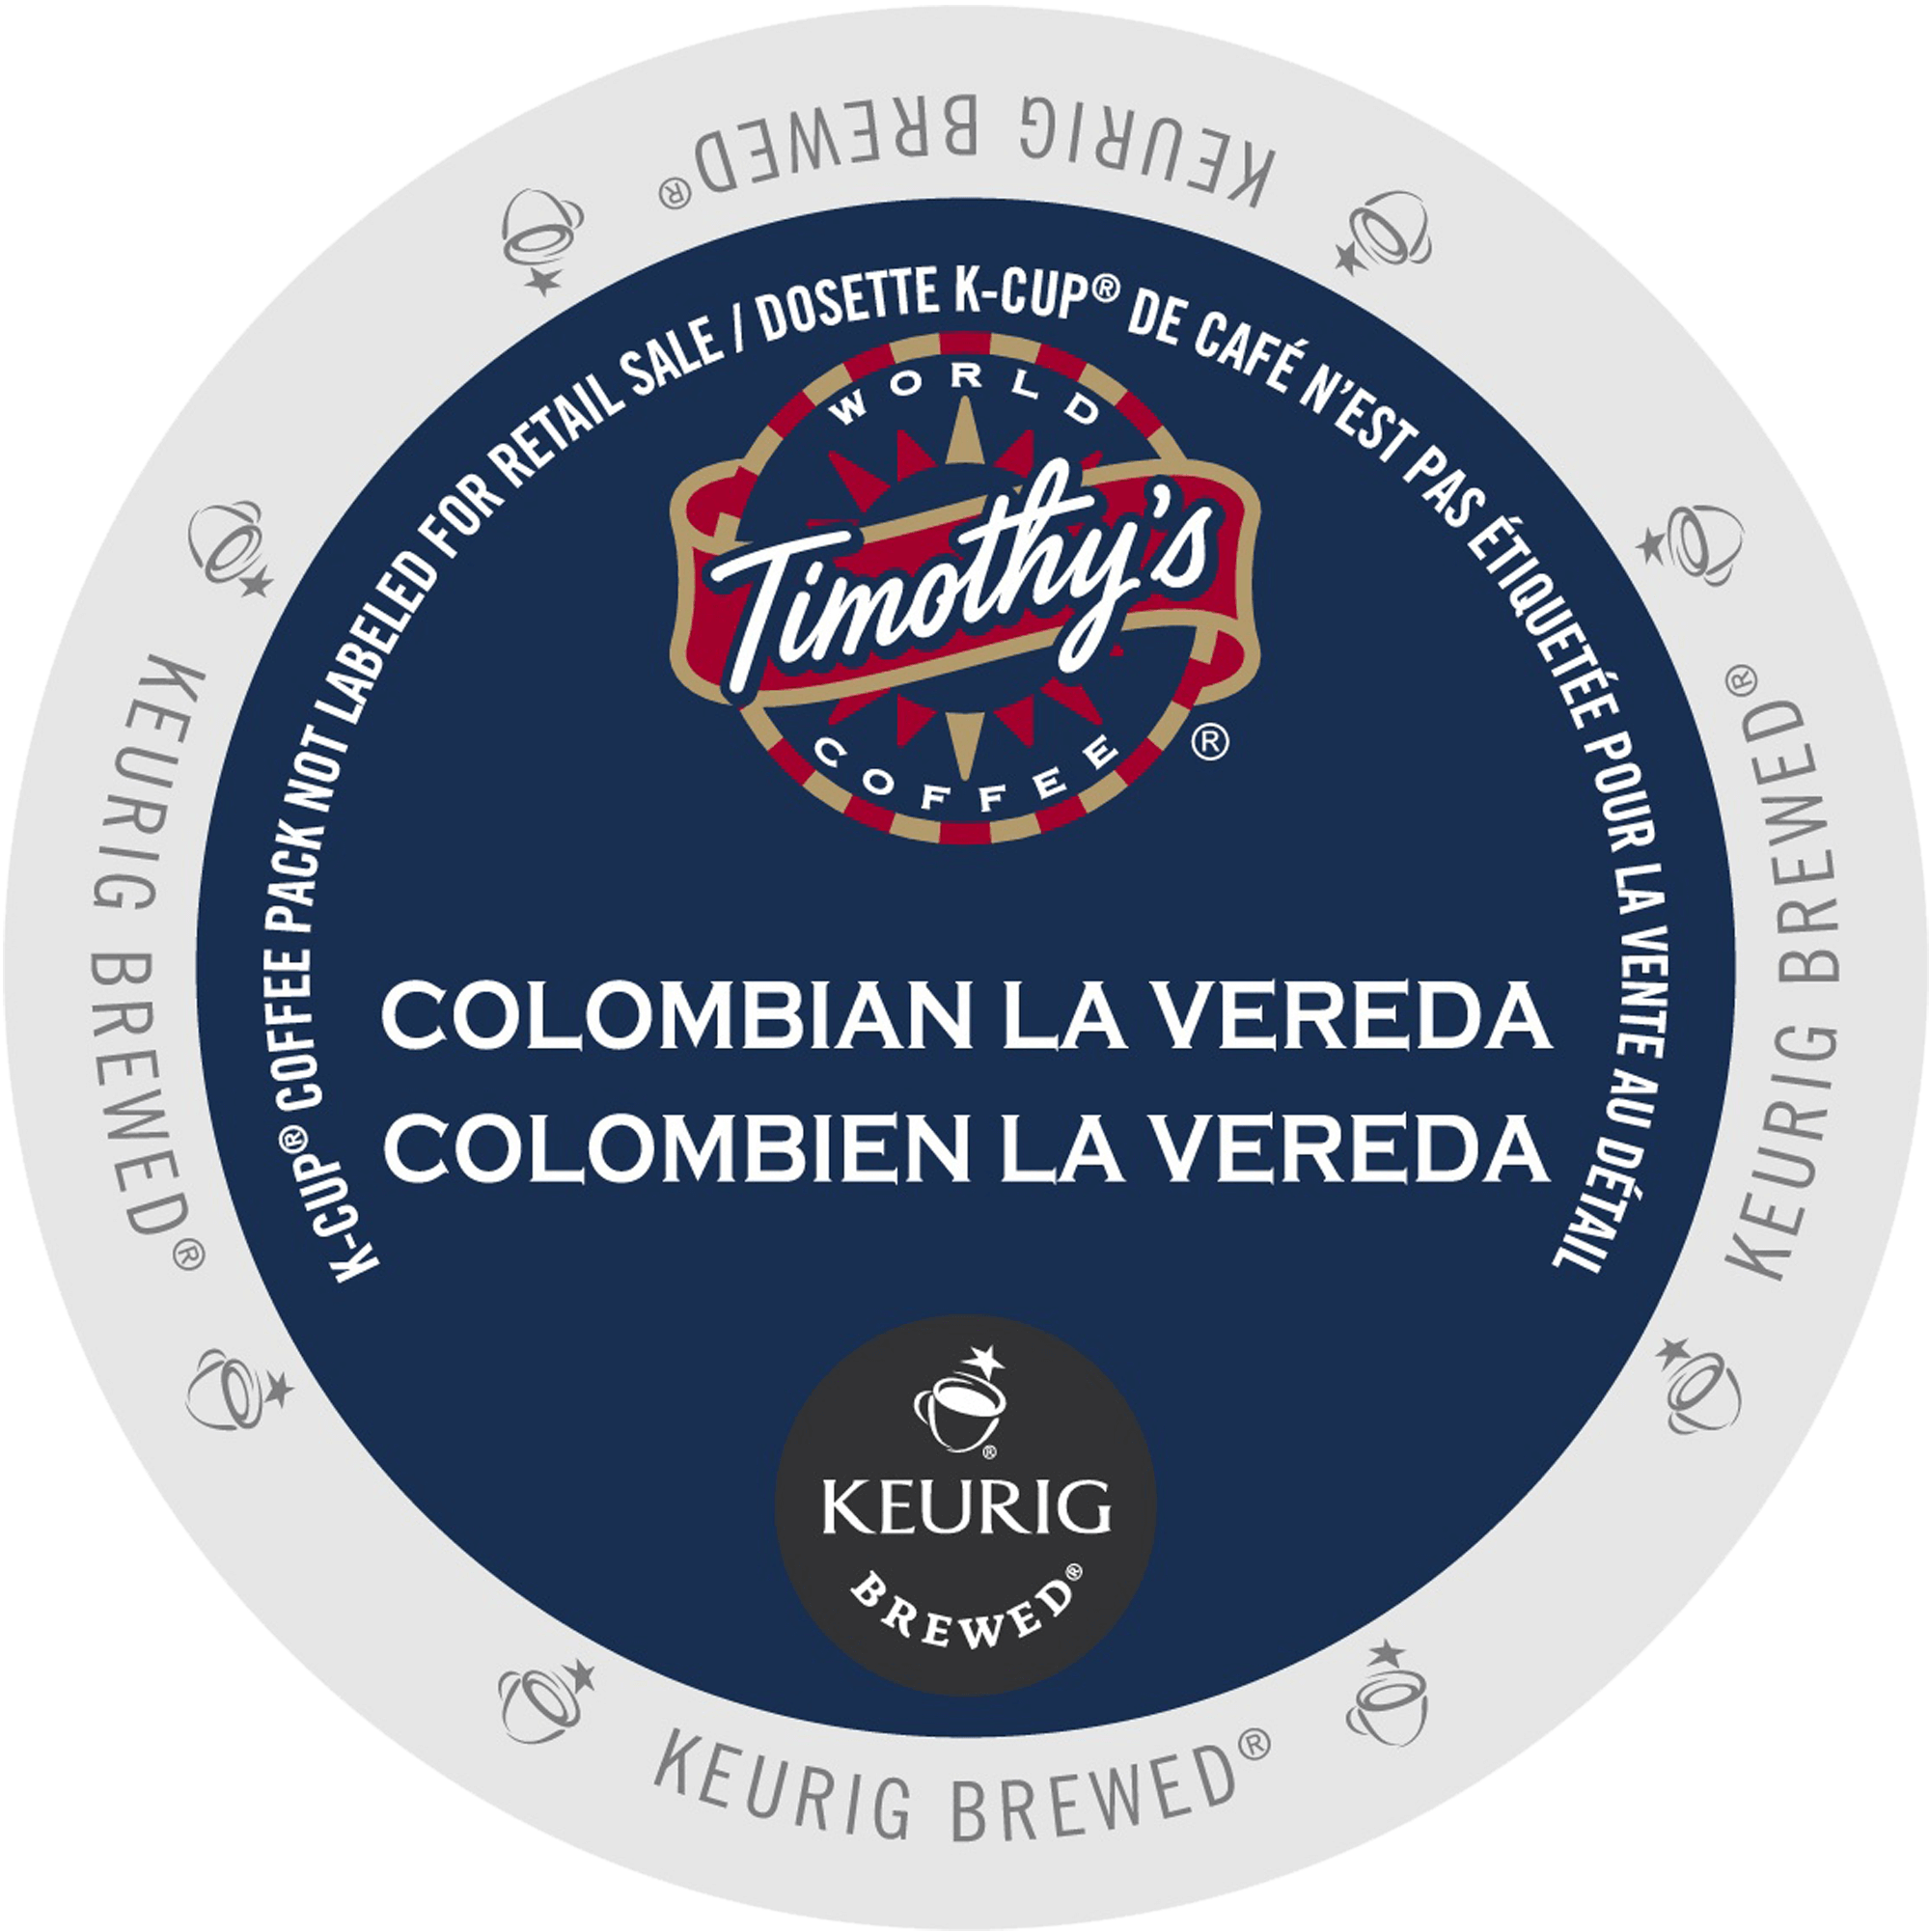 colombian-la-vereda-coffee-timothys-k-cup_ca_general